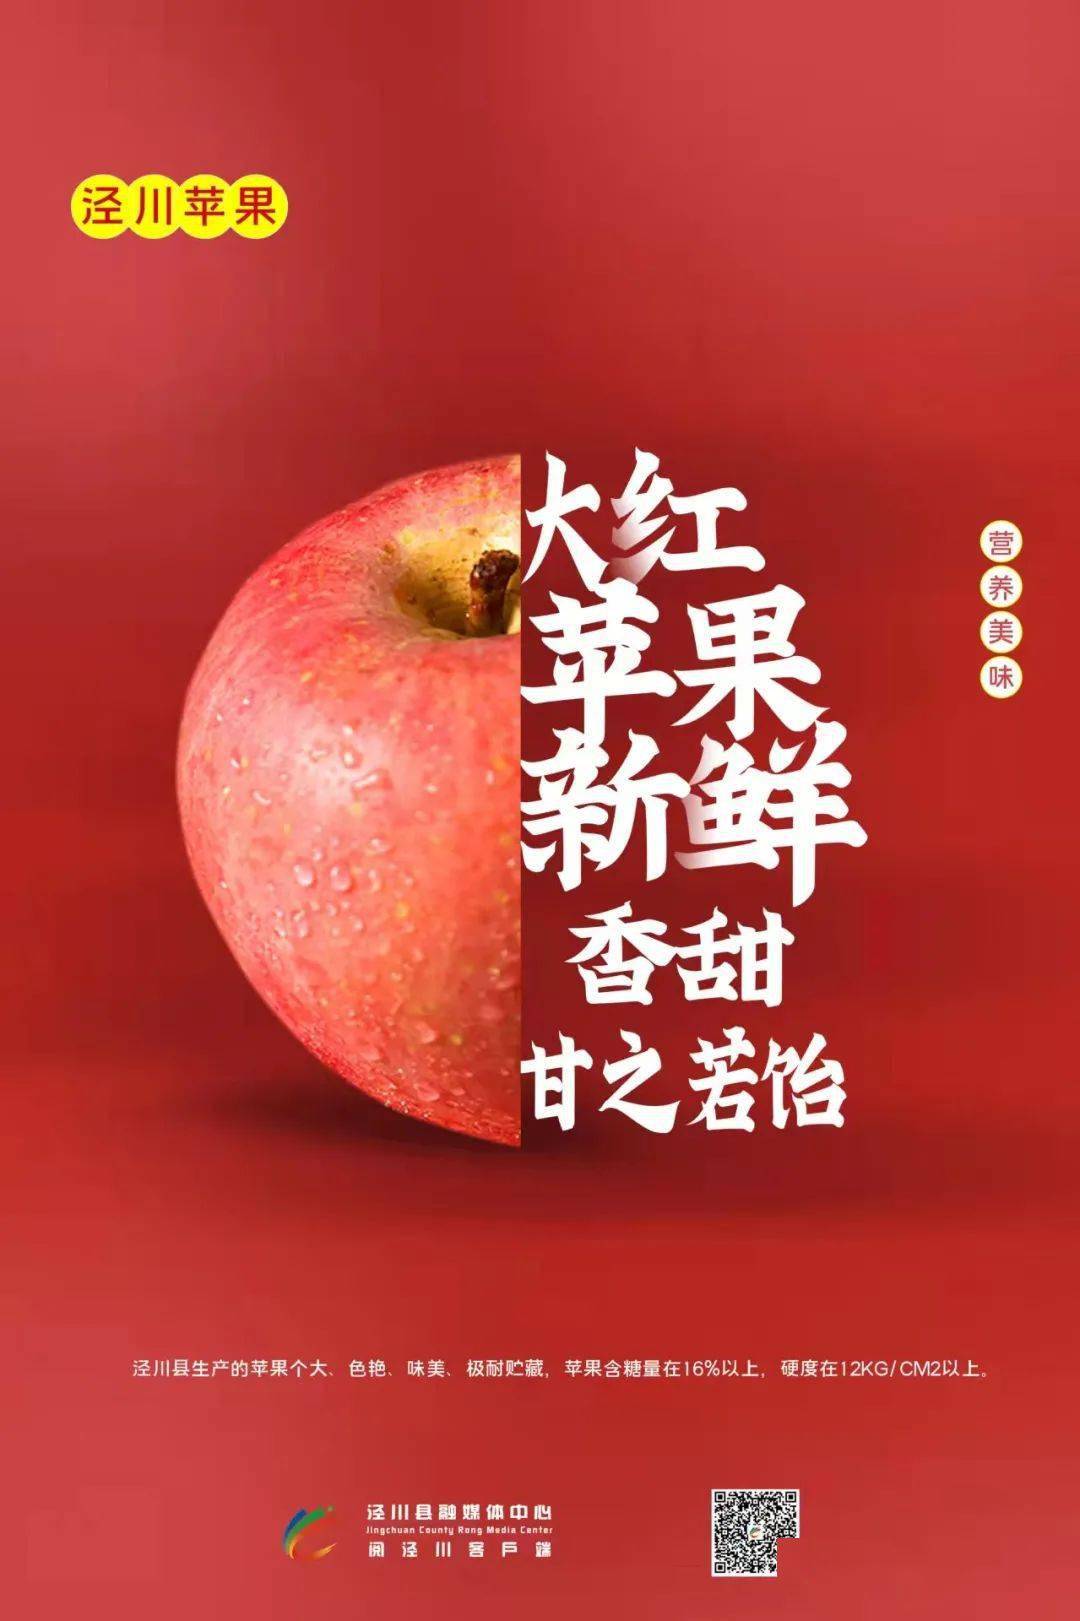 原创海报泾川苹果